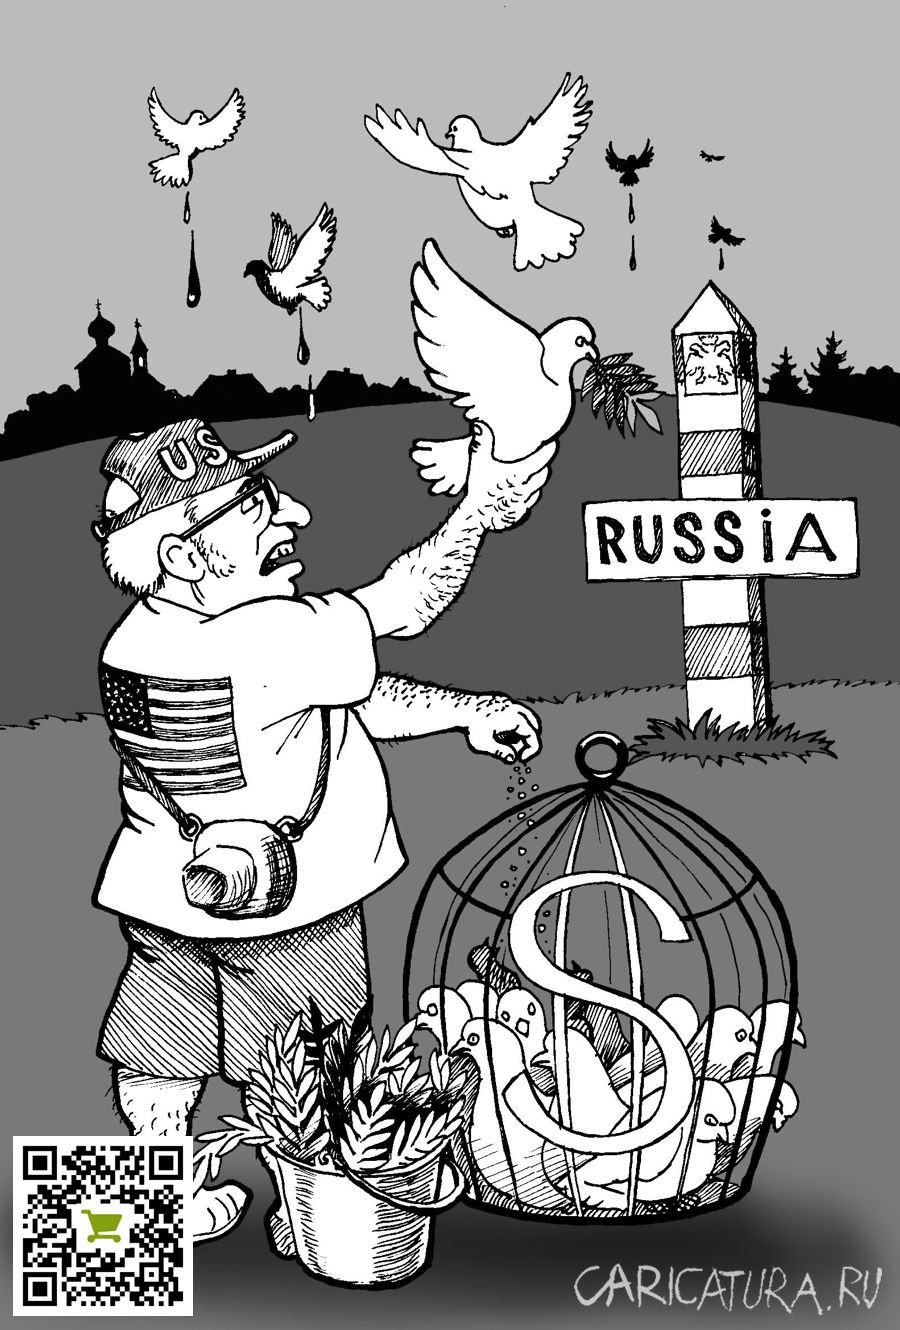 Карикатура ""Голуби мира" для России", Василий Миронов